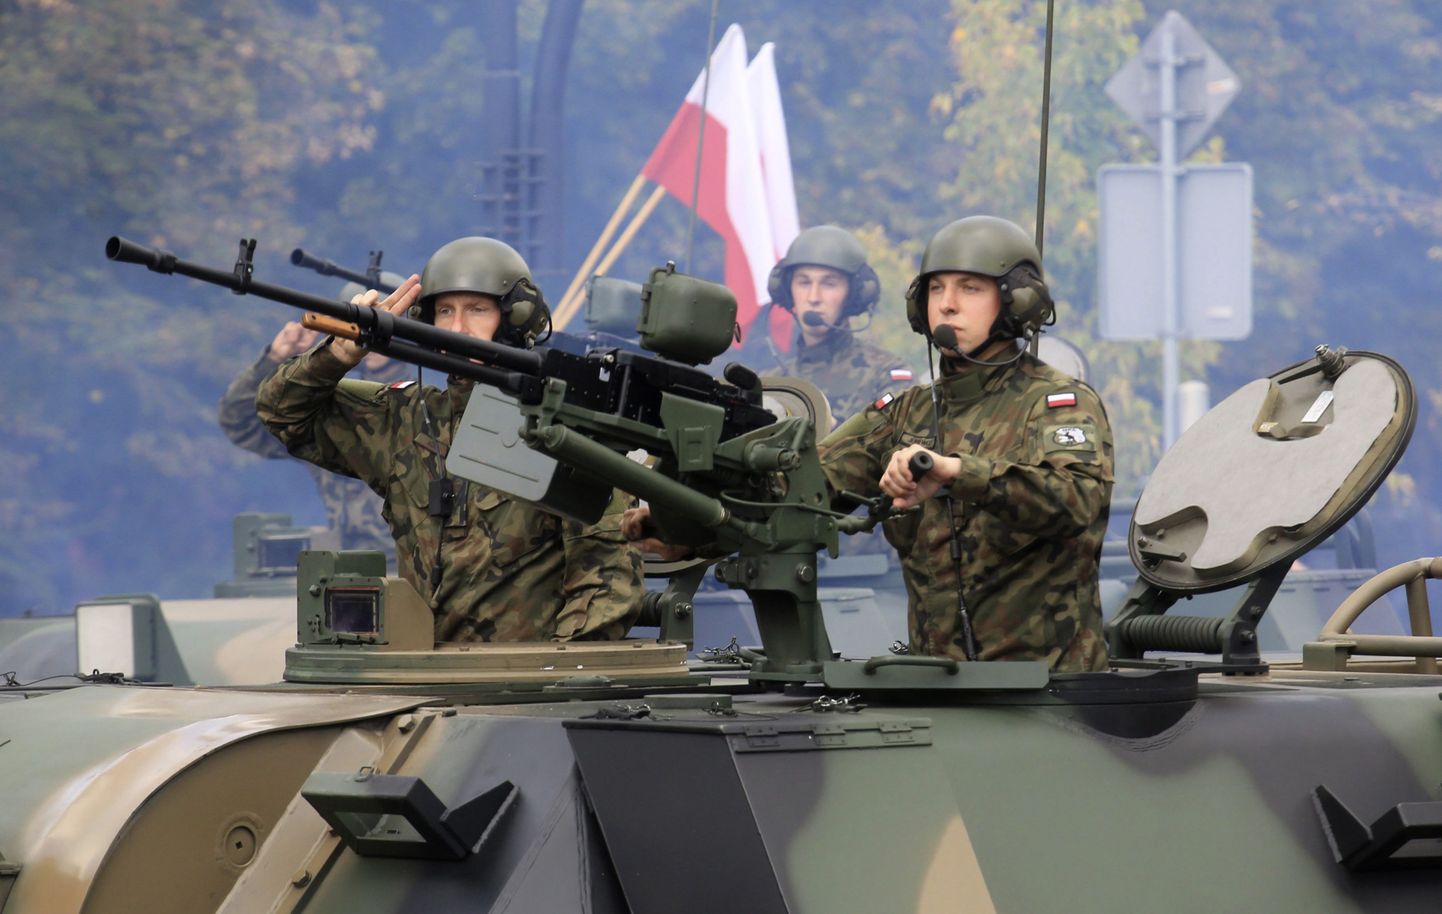 Poola sõdurid paraadil.